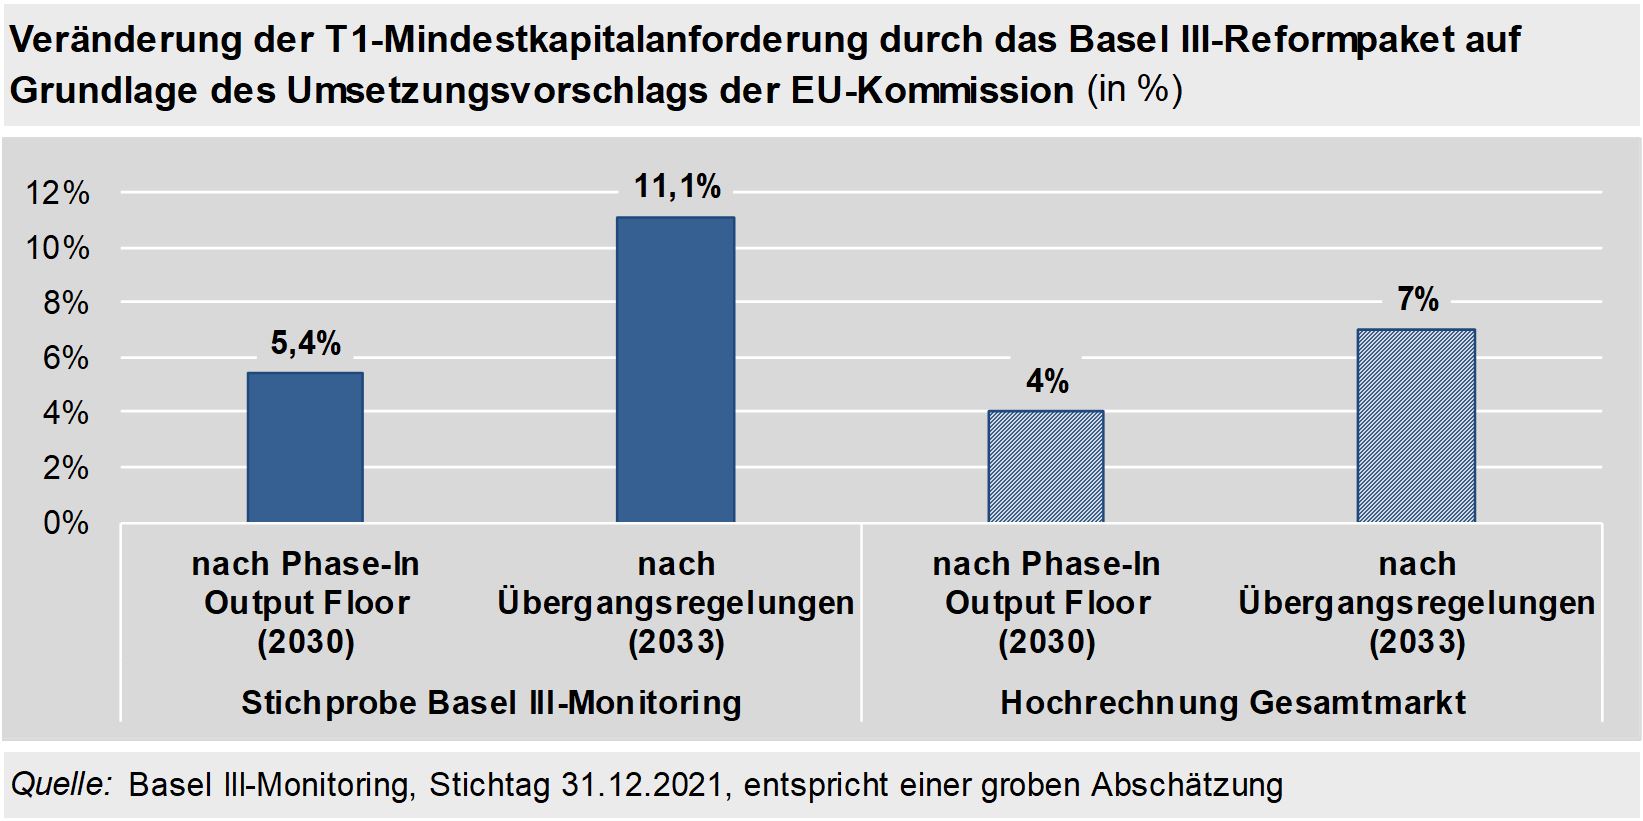 Veränderung der T1-Mindestkapitalanforderung durch das Basel III-Reformpaket auf Grundlage des Umsetzungsvorschlags der EU-Kommission (in %)